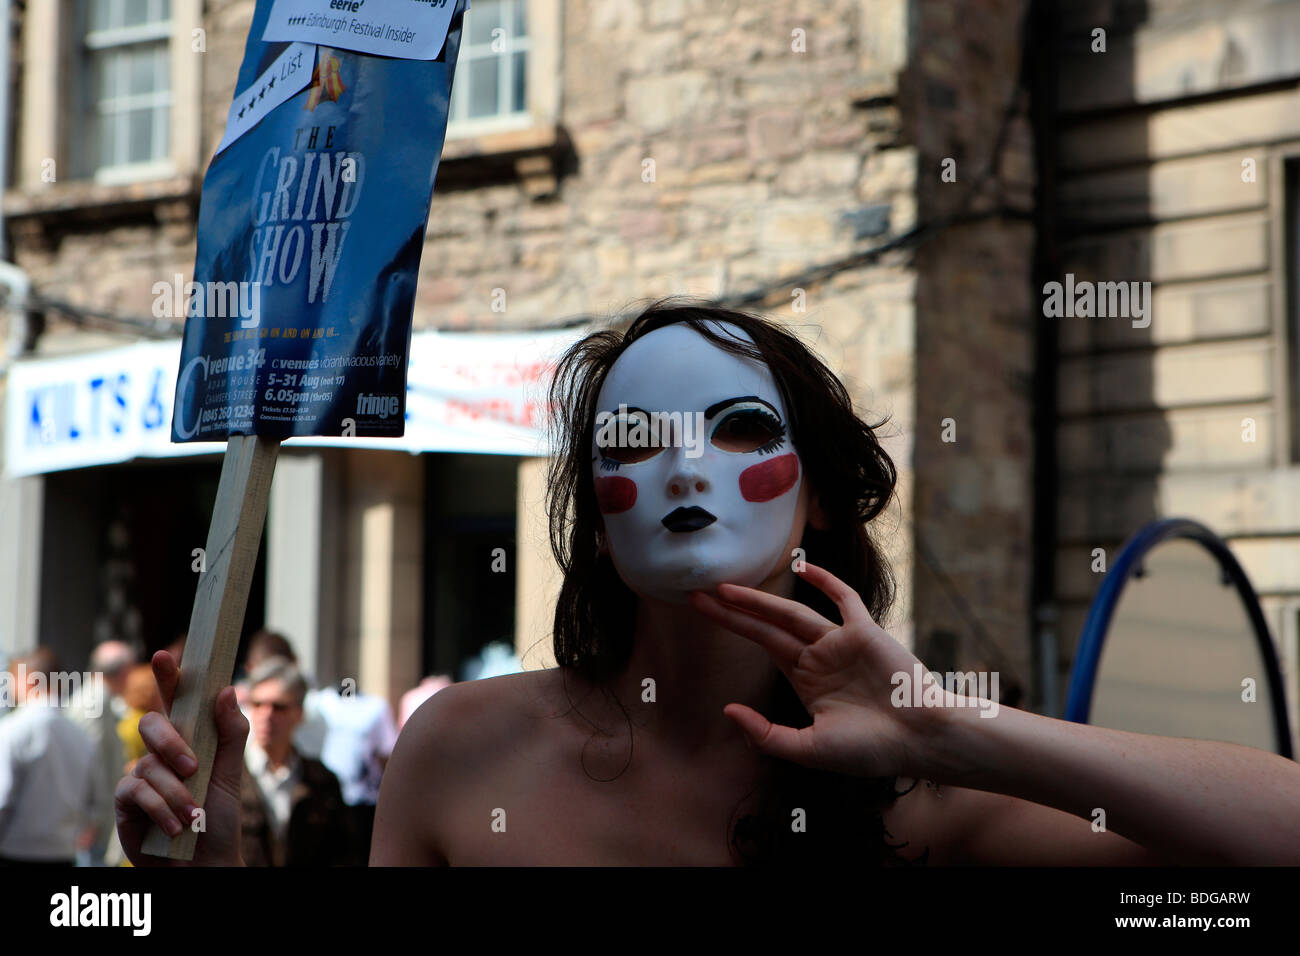 Fille avec un masque blanc sur la promotion de l'Grind Spectacle au Edinburgh Fringe Festival 2009 Banque D'Images